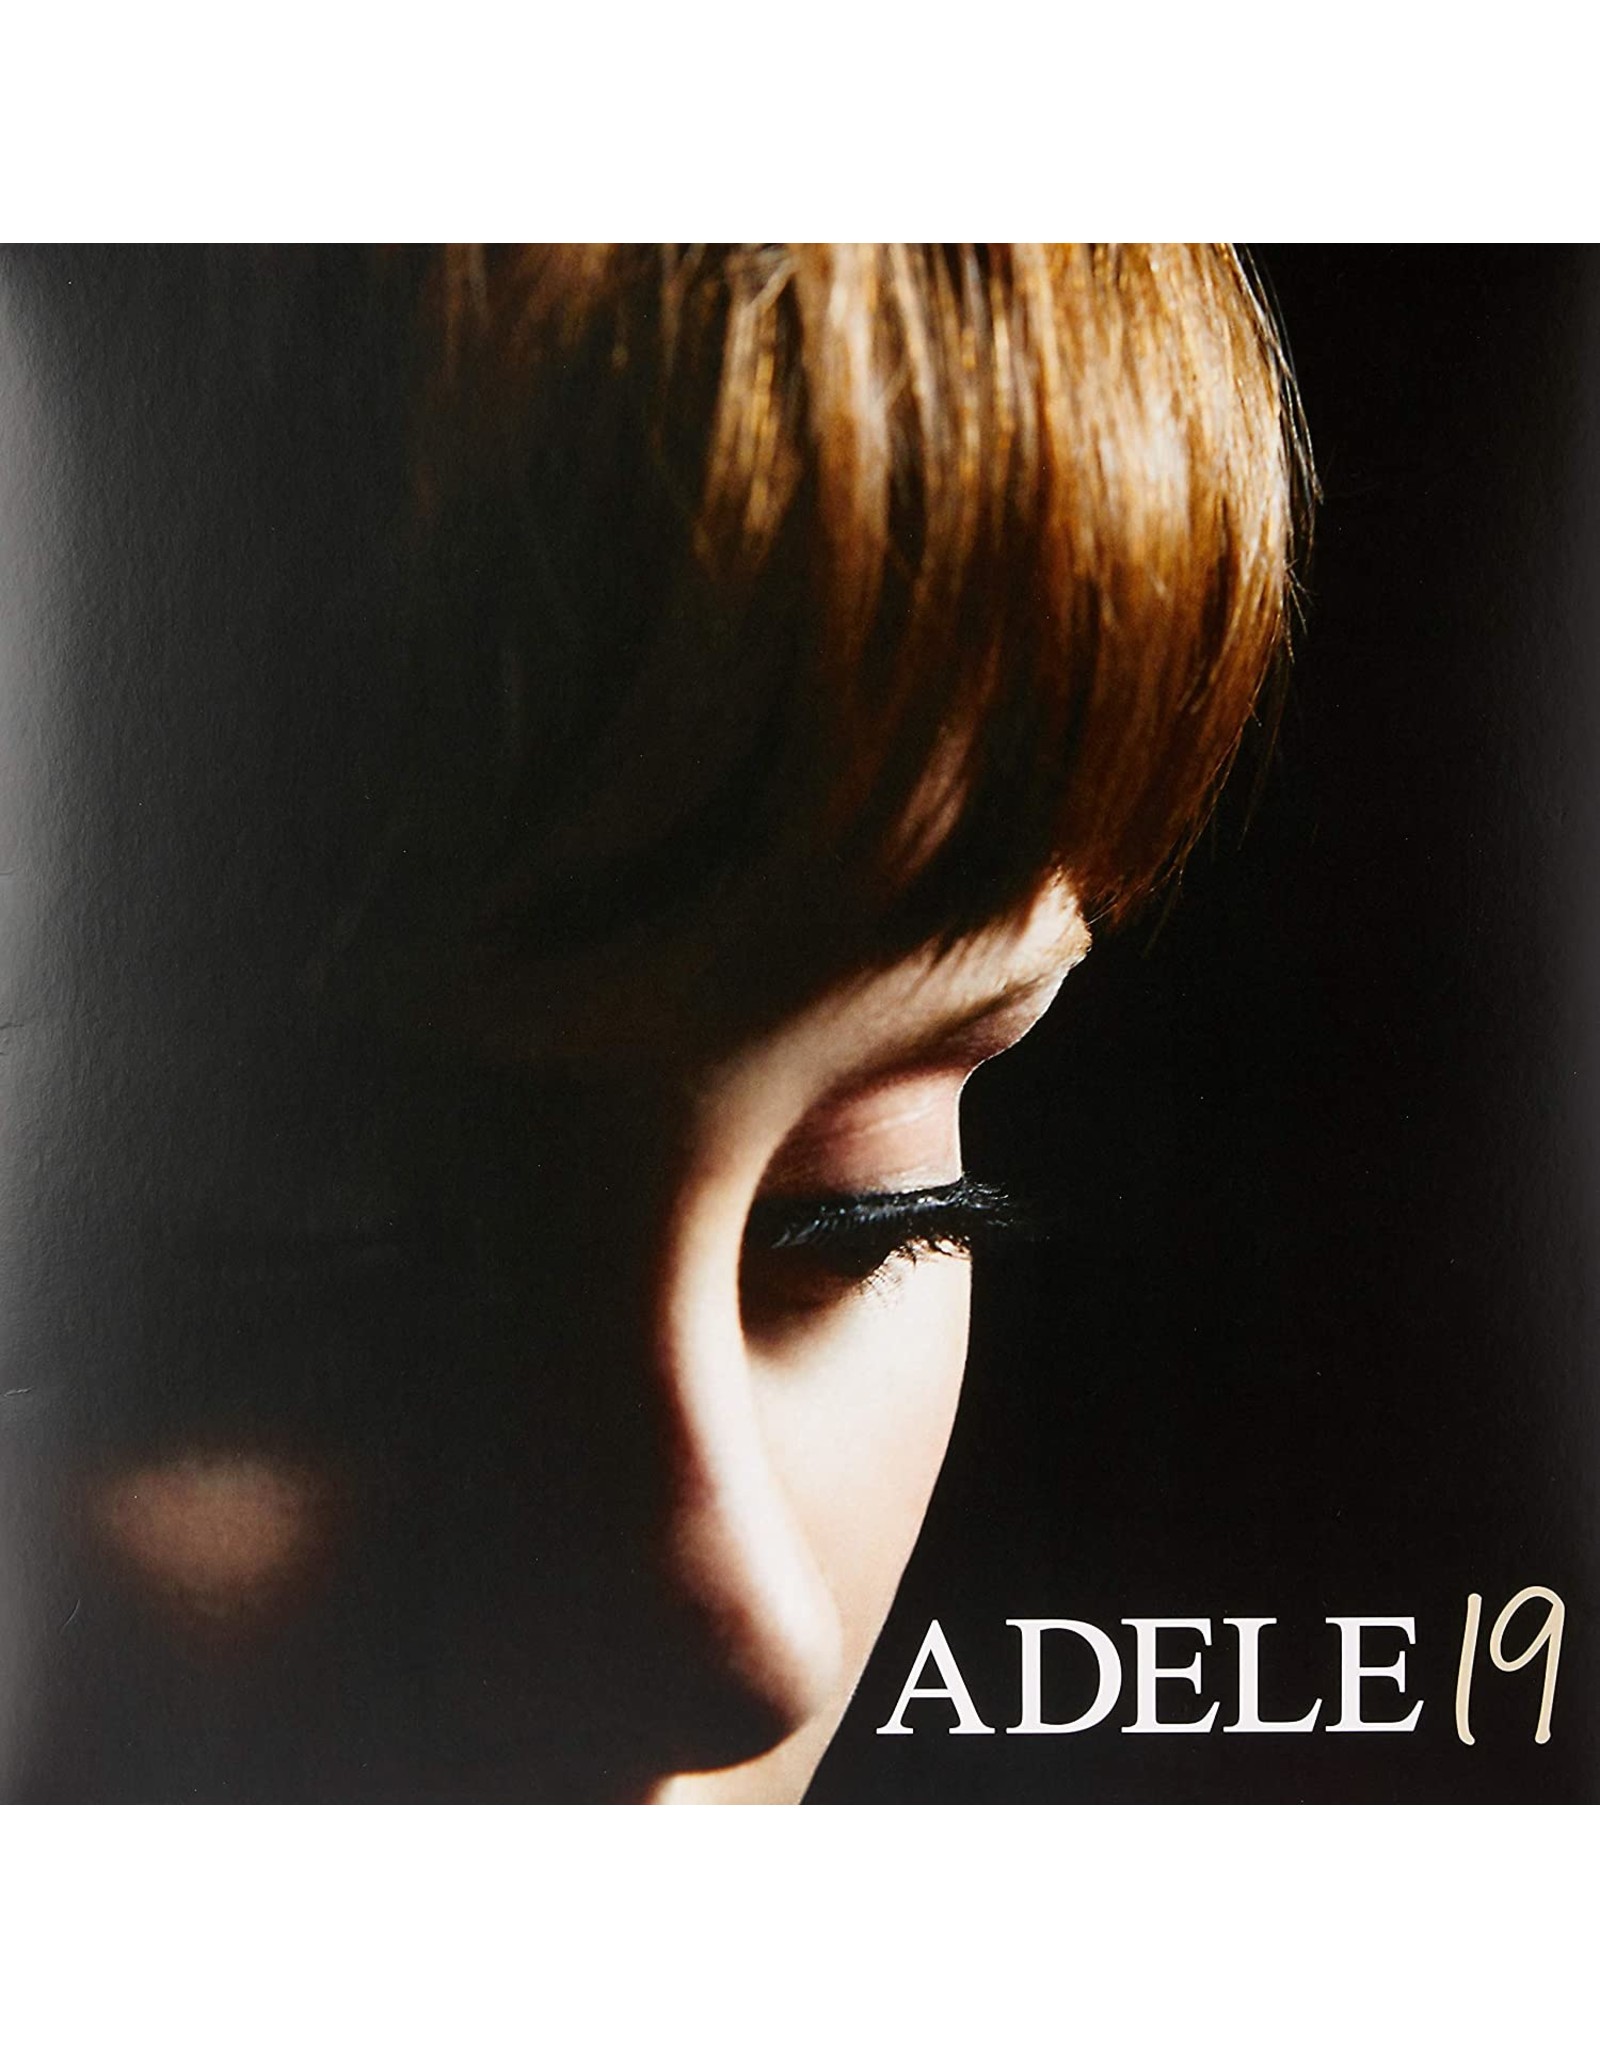 Adele - 19 UK PRESSING LP